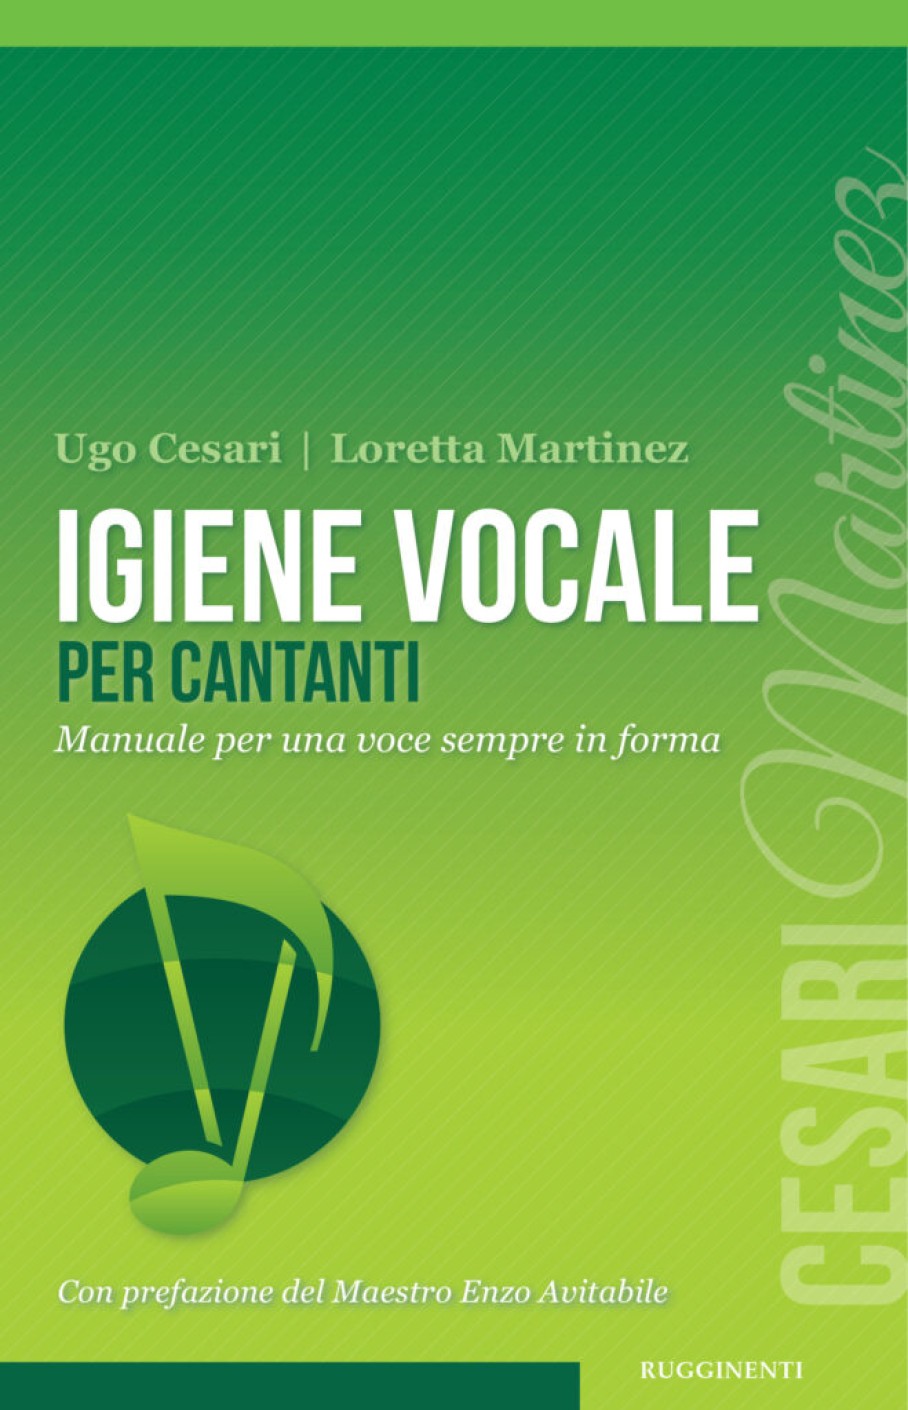 Igiene vocale per cantanti, il secondo libro di Loretta Martinez